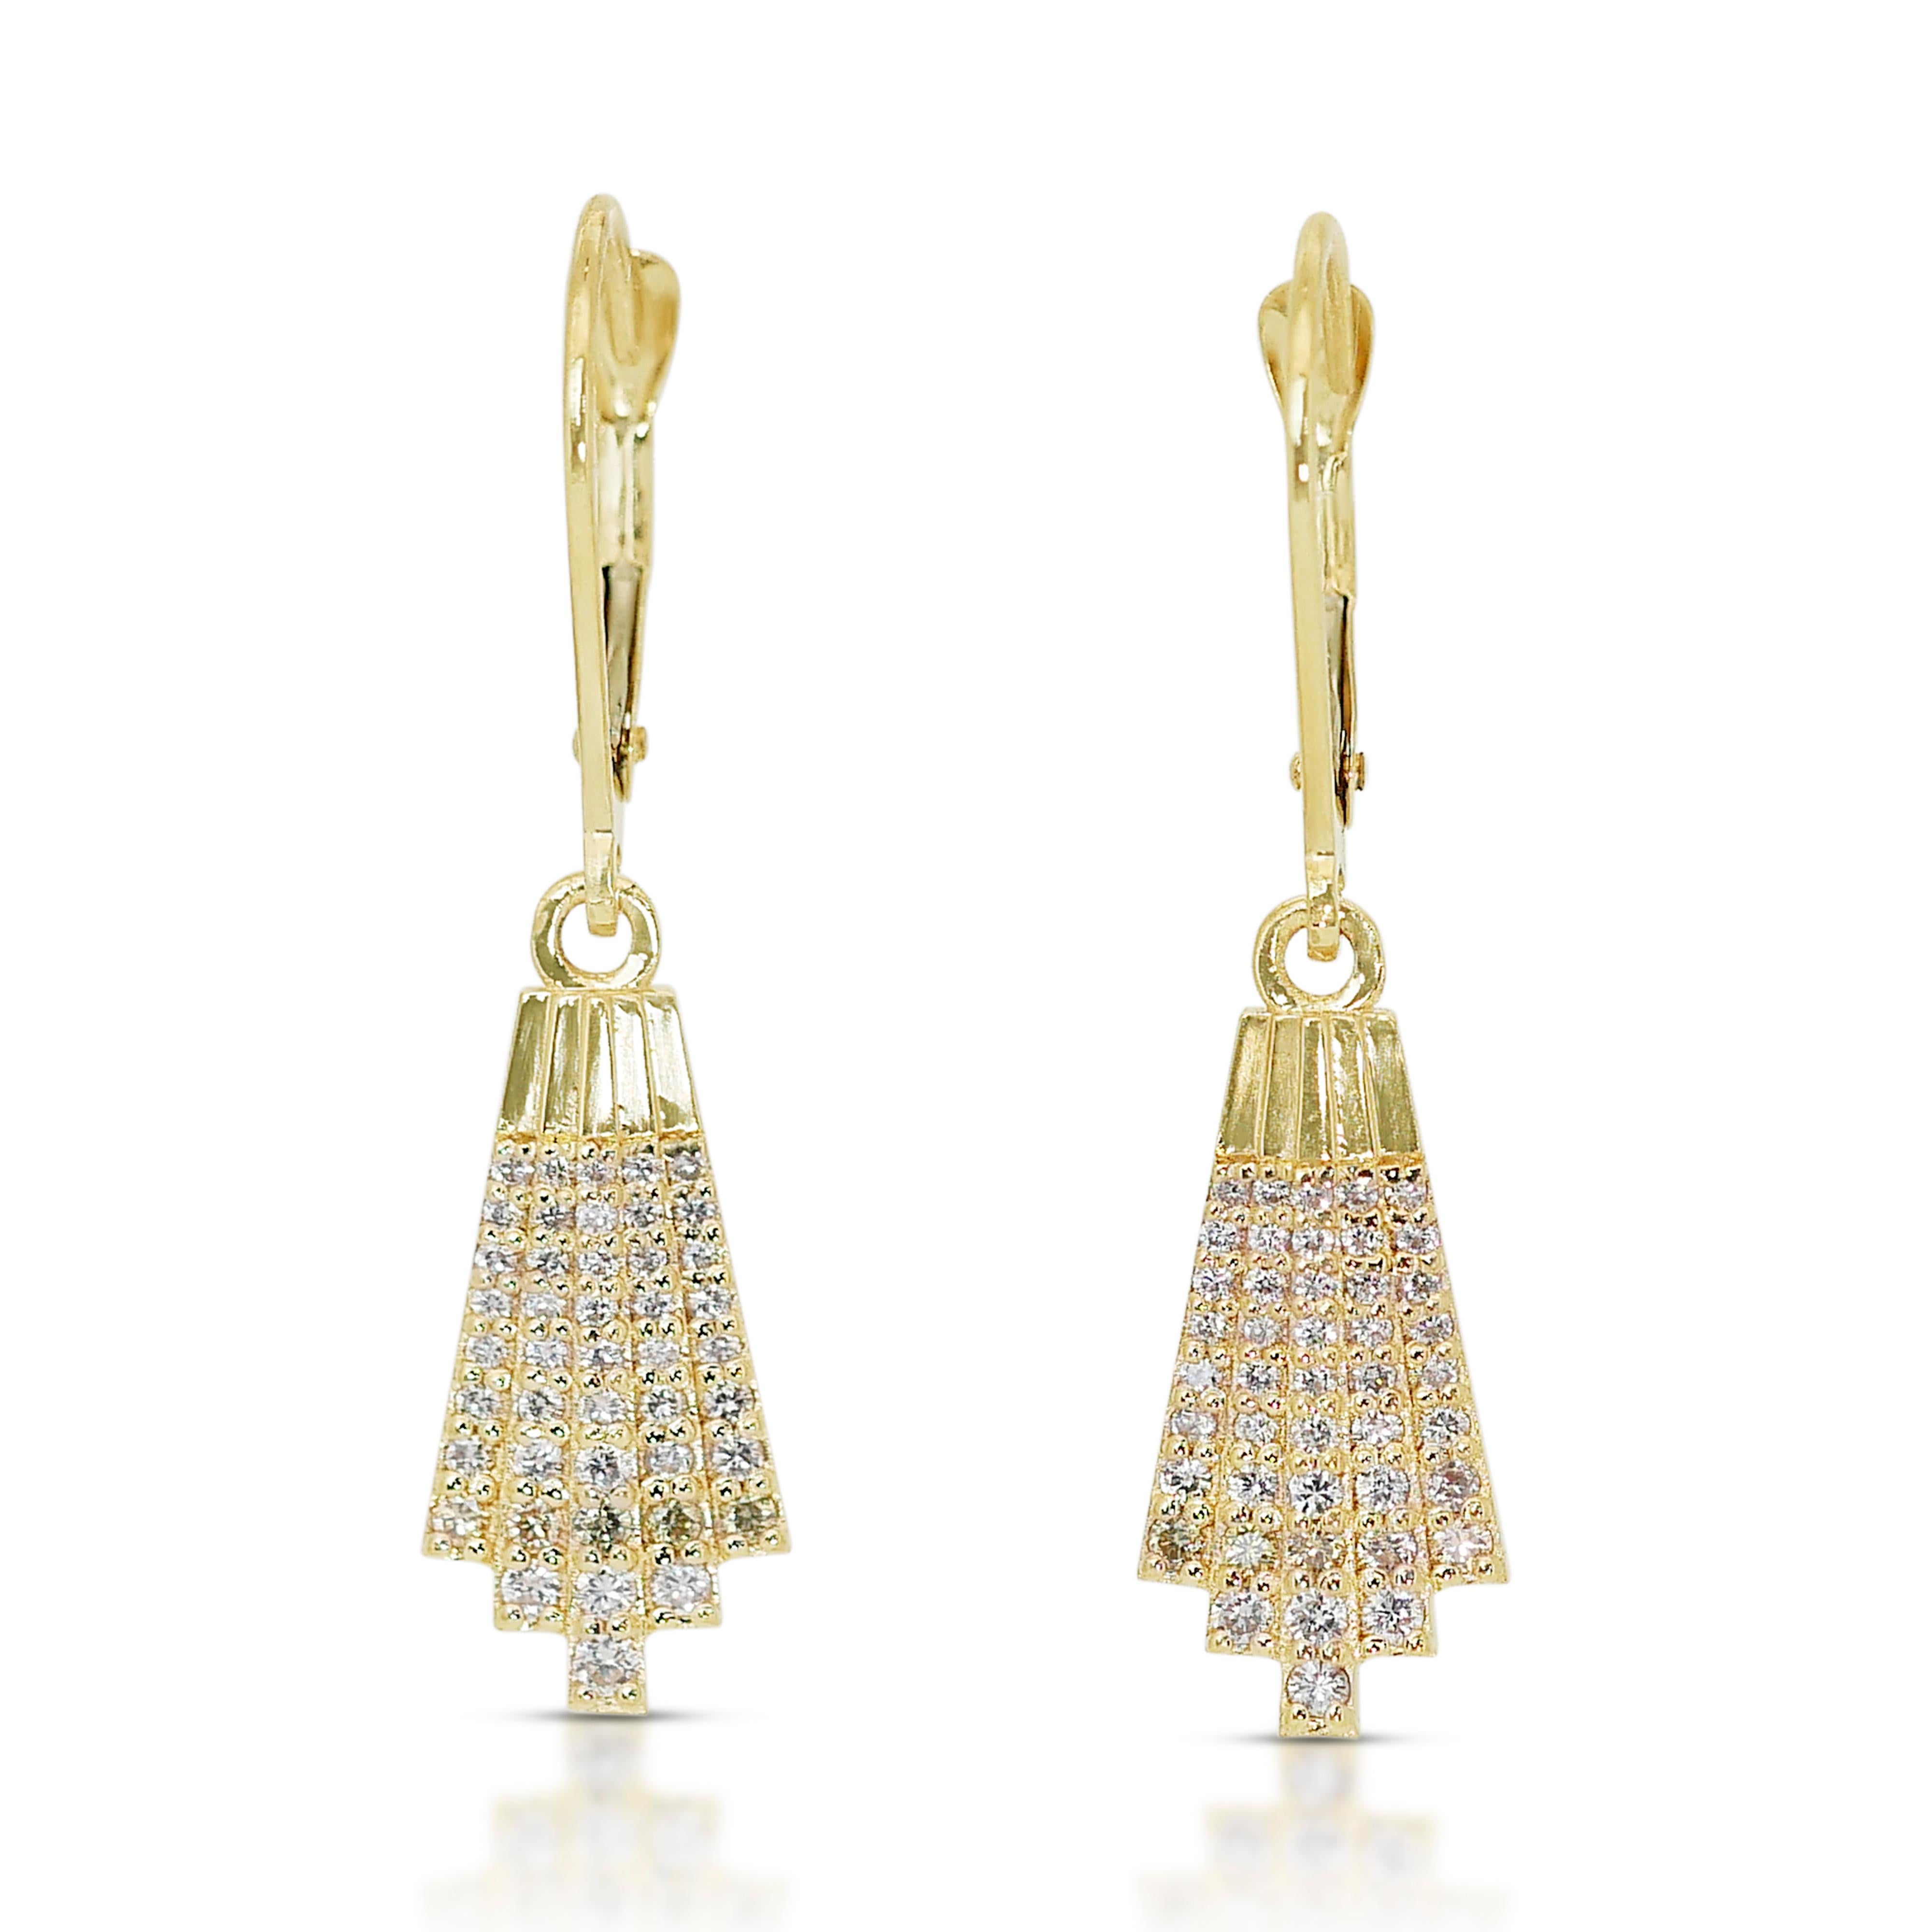 Schillernde Art Deco Stil 0,46ct Diamanten Tropfen Ohrringe in 18k Gelbgold - IGI zertifiziert

Diese bezaubernden Ohrringe aus 14 Karat Weißgold glänzen mit insgesamt 0,46 Karat Diamanten, die das Licht bei jeder Drehung einfangen und reflektieren.